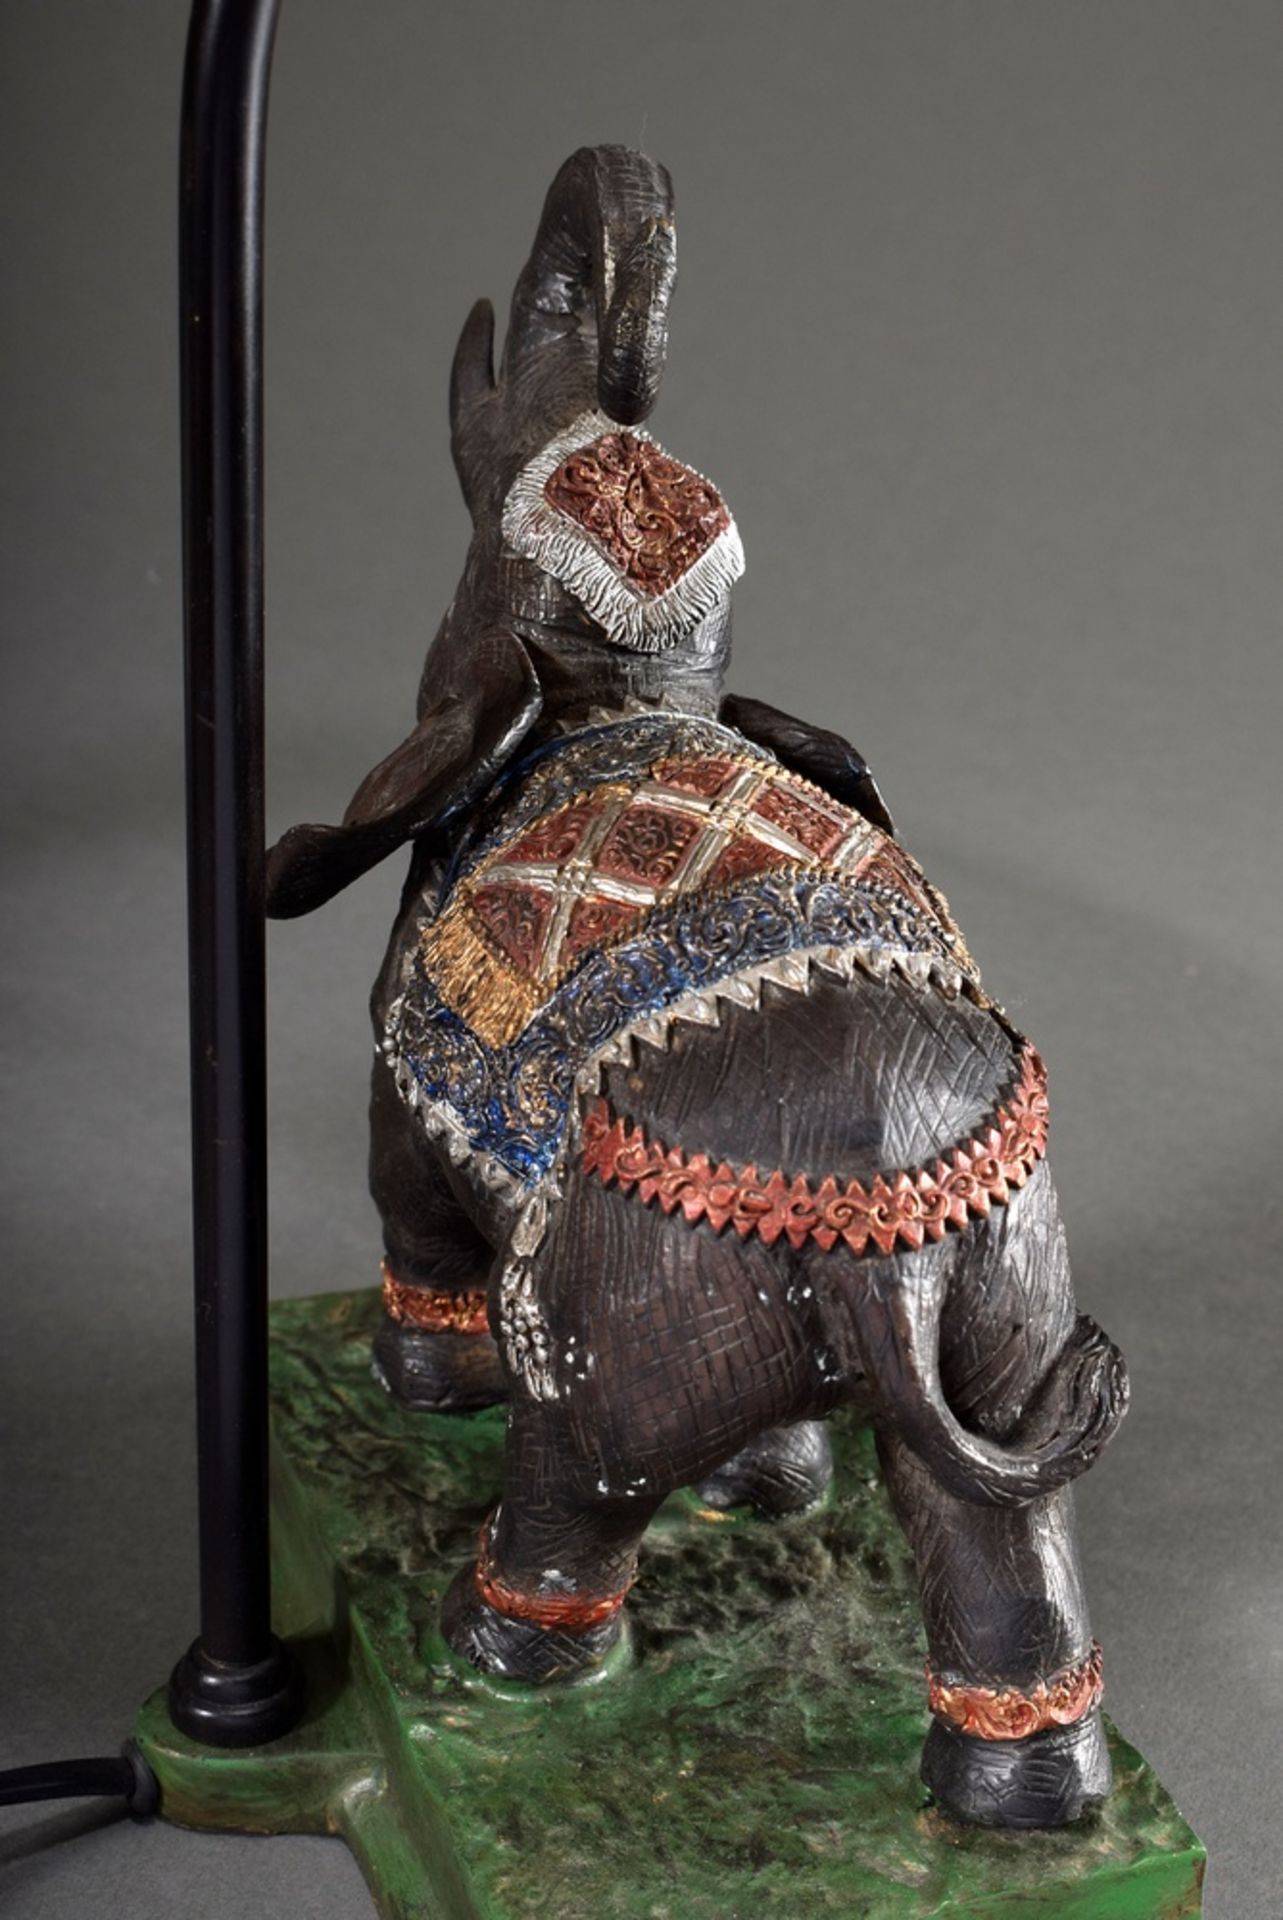 Moderne Tischlampe "Elefant", farbig bemaltes Metall, schwarz-weiß gestreifter Schirm, H. 54,5cm - Bild 4 aus 7